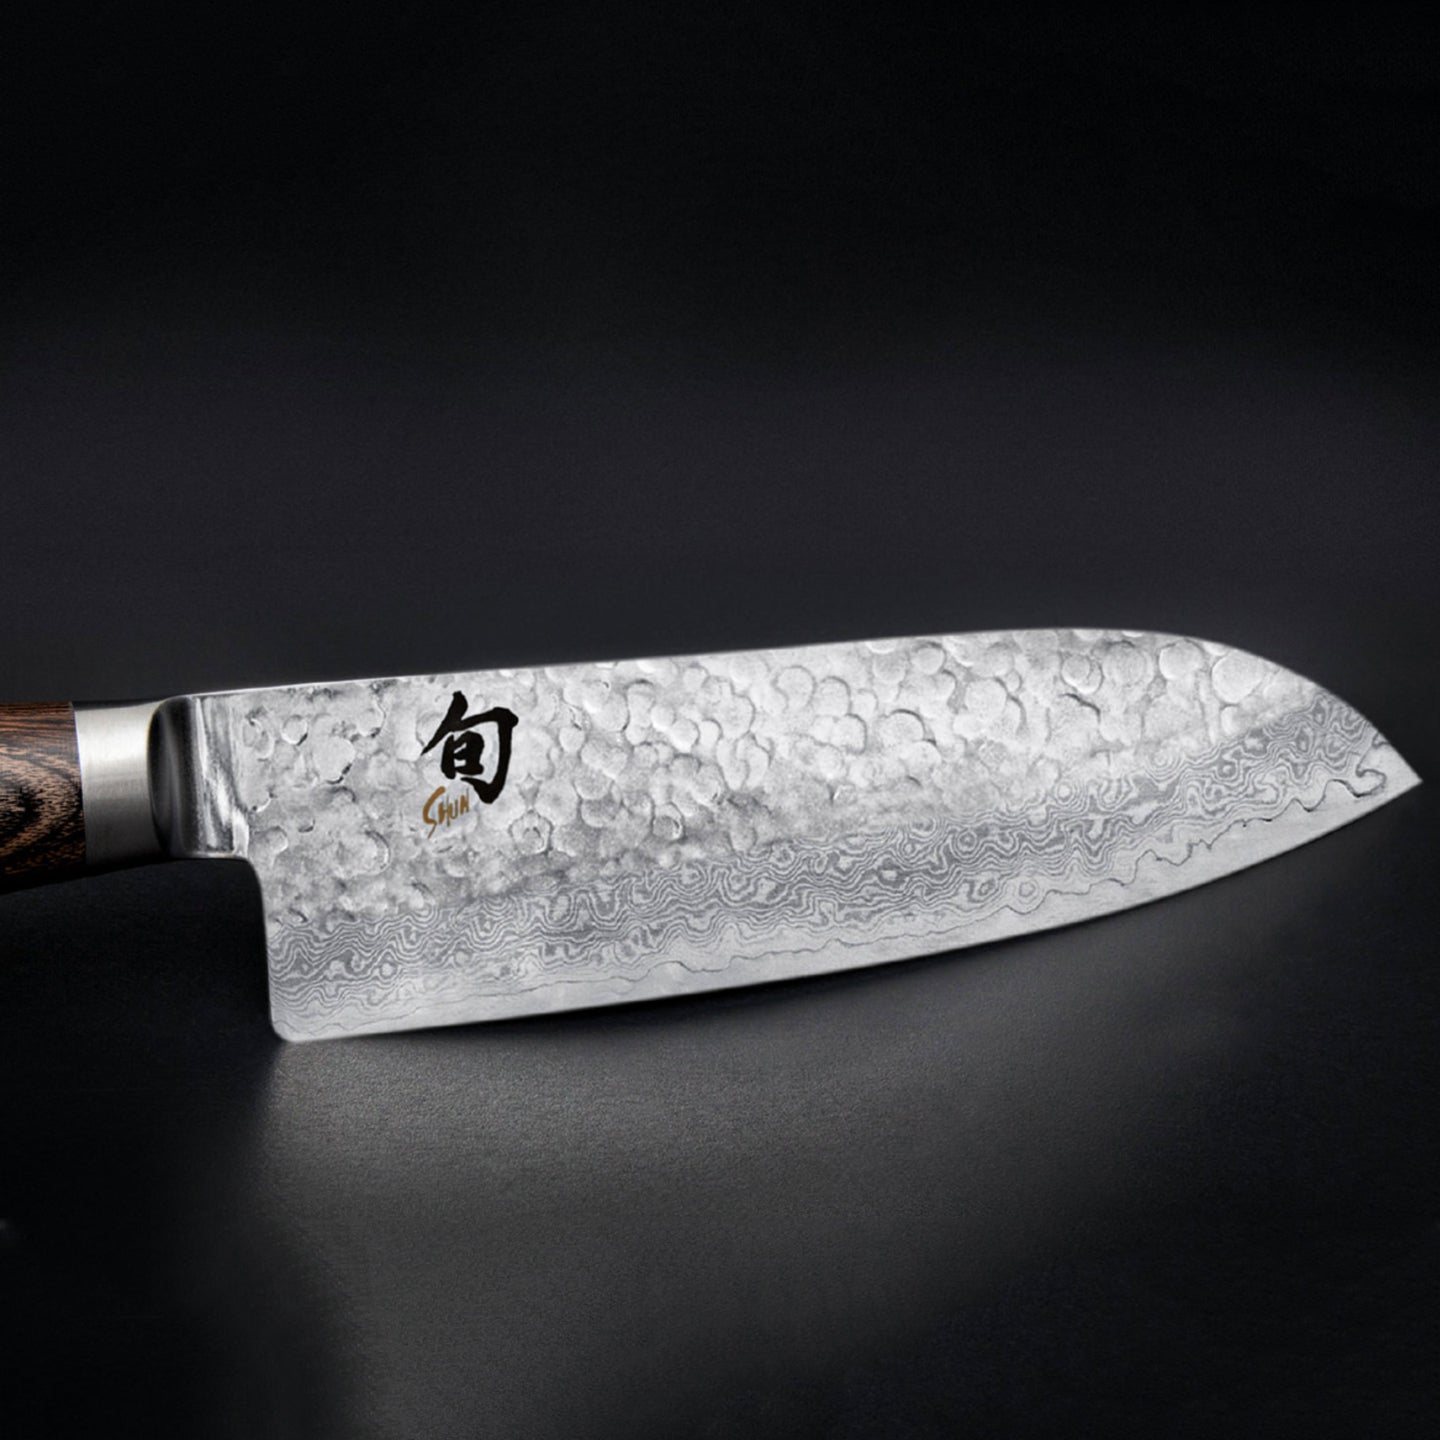 Kai Shun Premier Santoku & Utility Knife Set